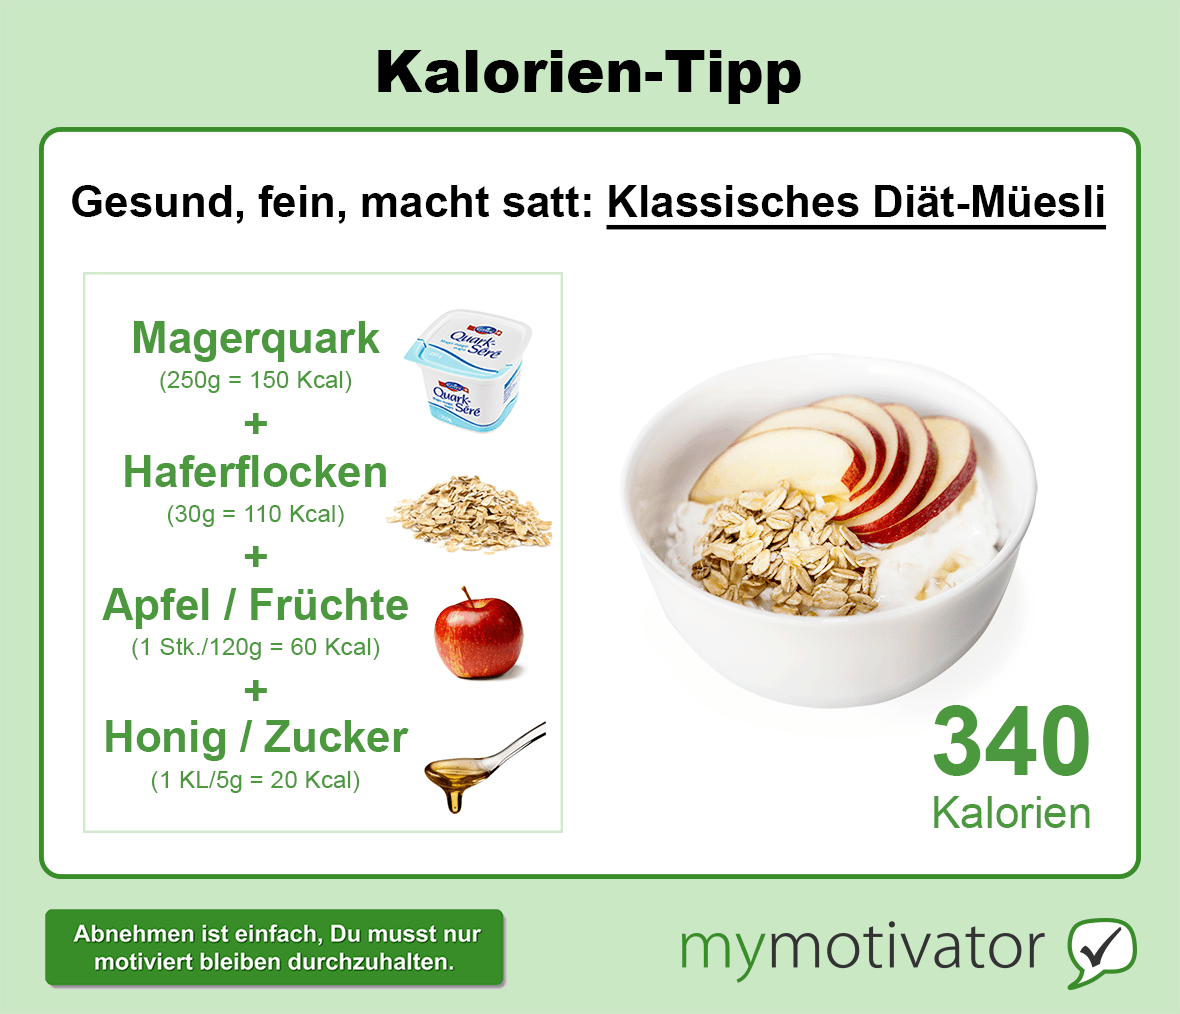 Klassisches Diät-Müesli: Magerquark + Haferflocken + Früchte